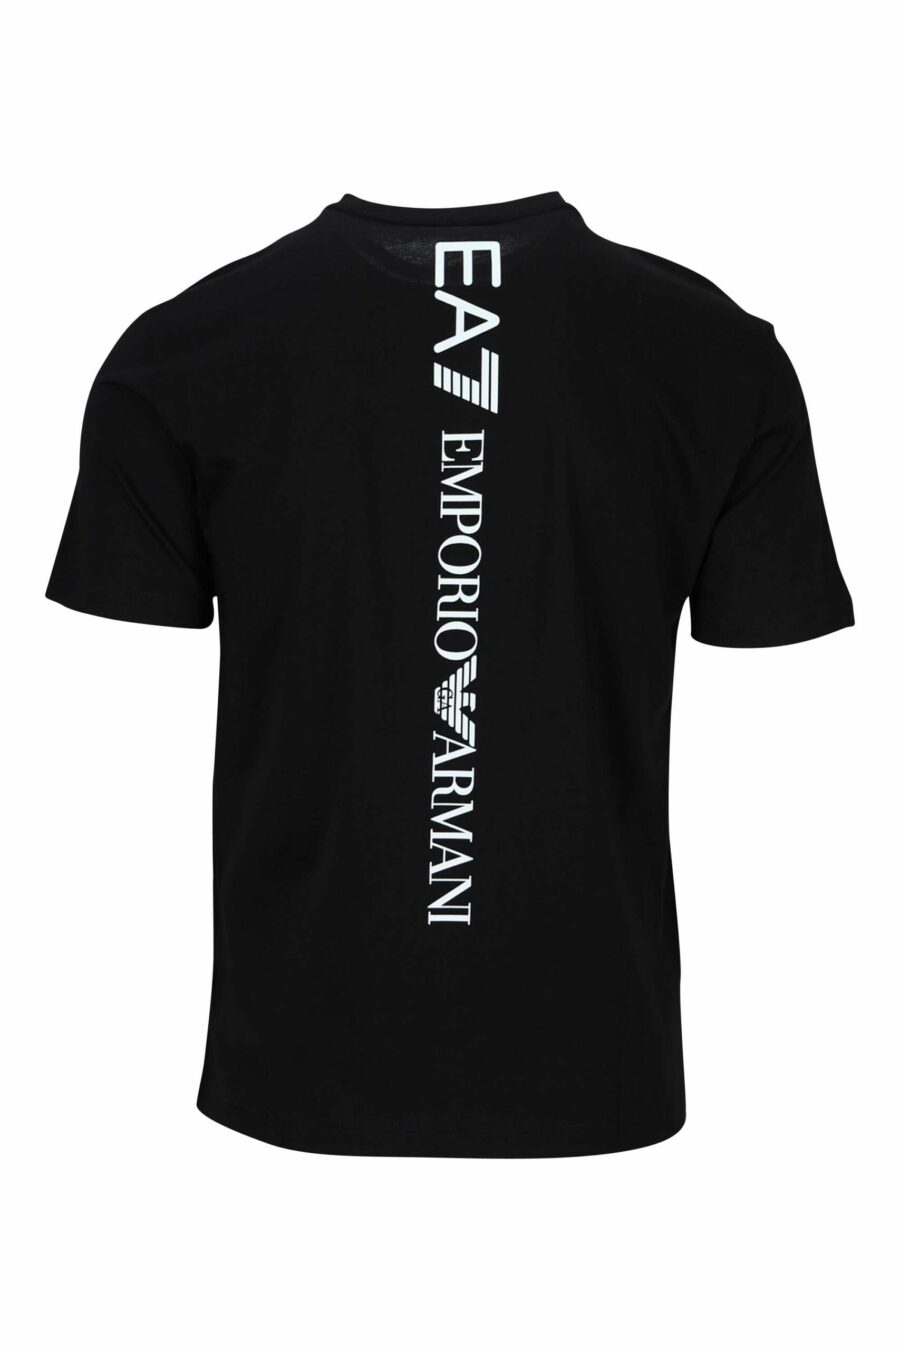 T-shirt noir avec maxilogo vertical "lux identity" au dos - 8058947452668 1 scaled